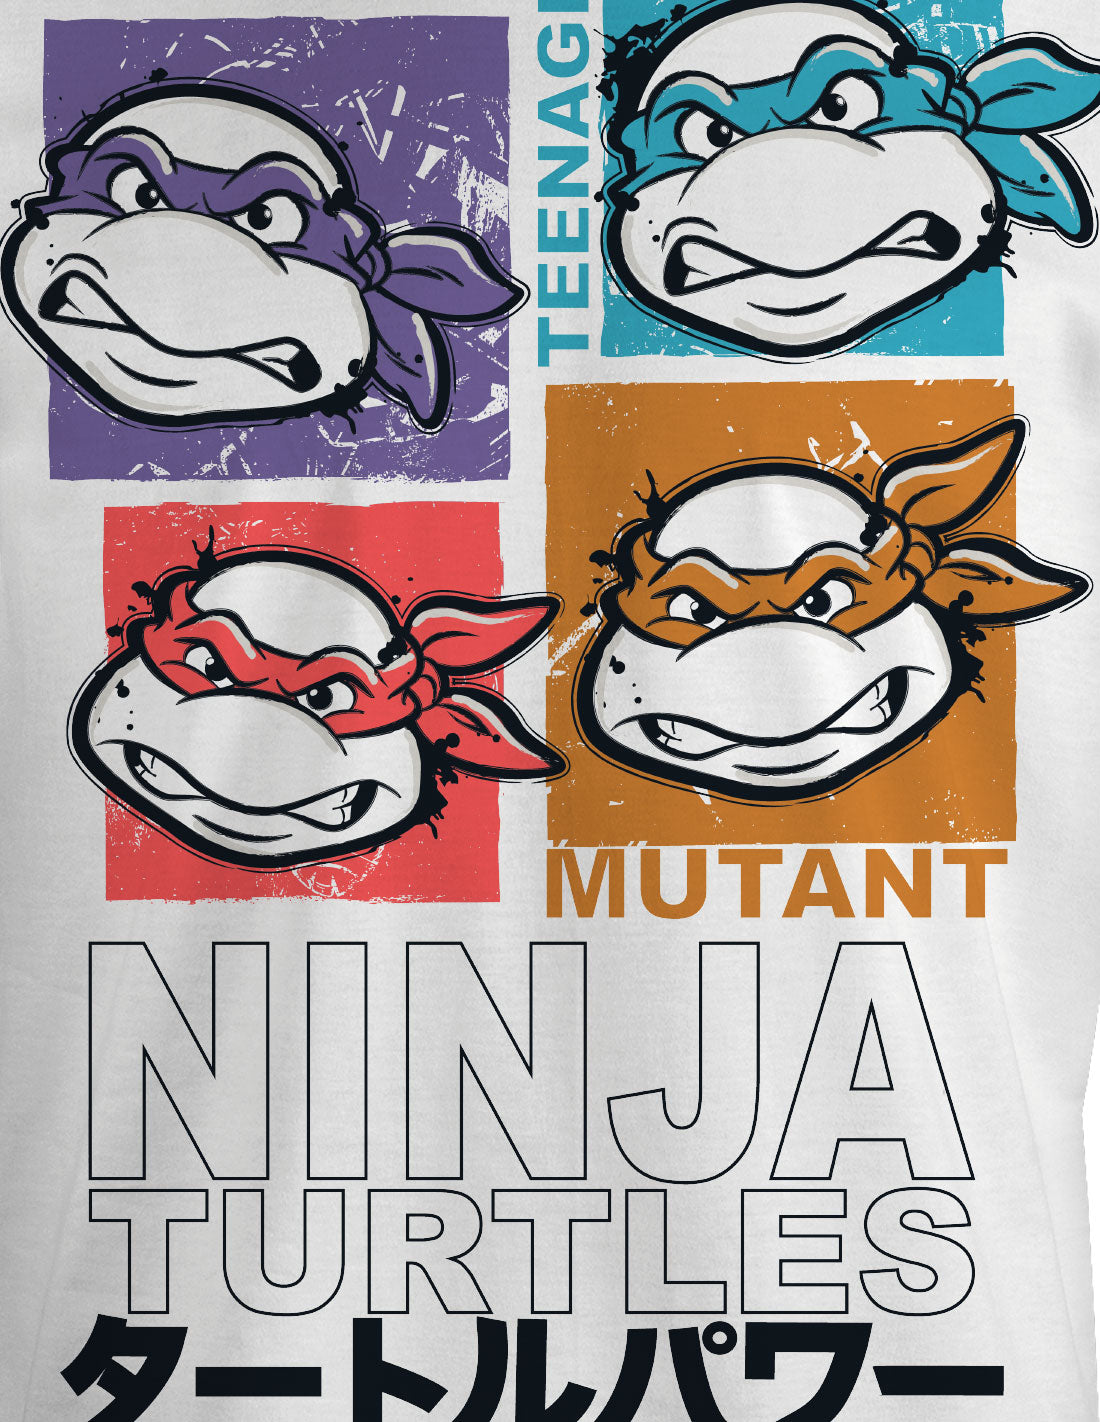 Teenage Mutant Ninja Turtles T-shirt - Ninja Turtles Frames